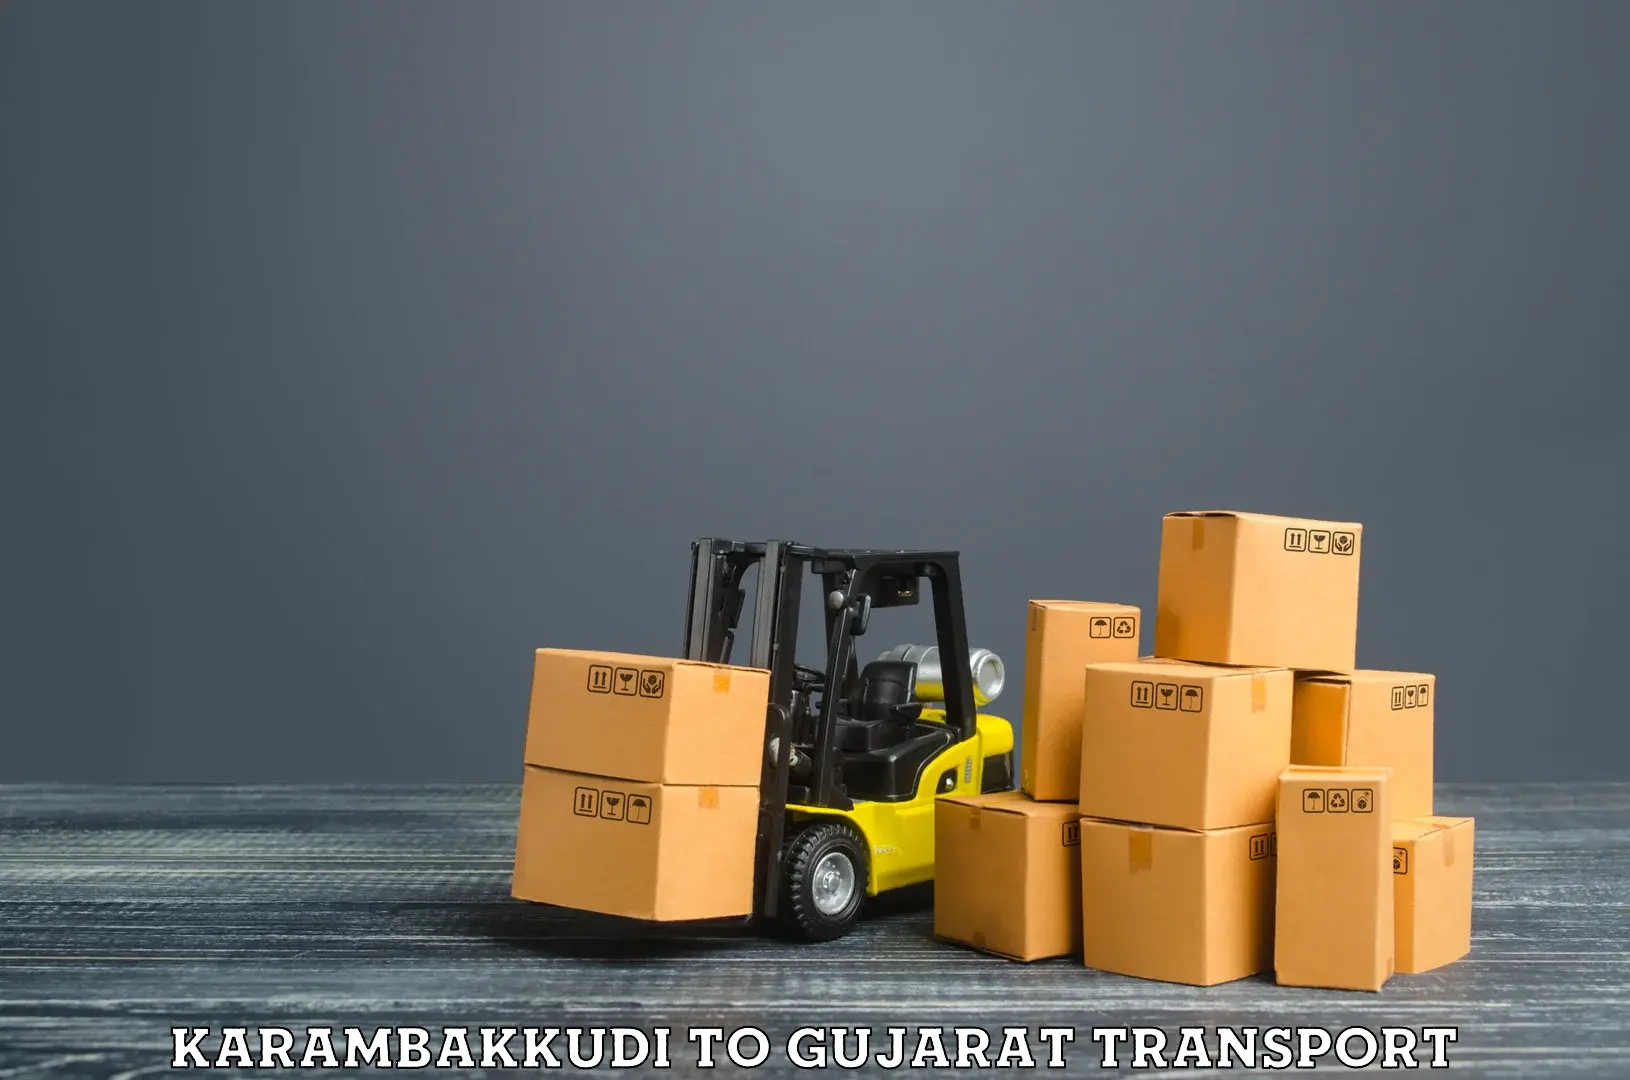 Container transport service Karambakkudi to Junagadh